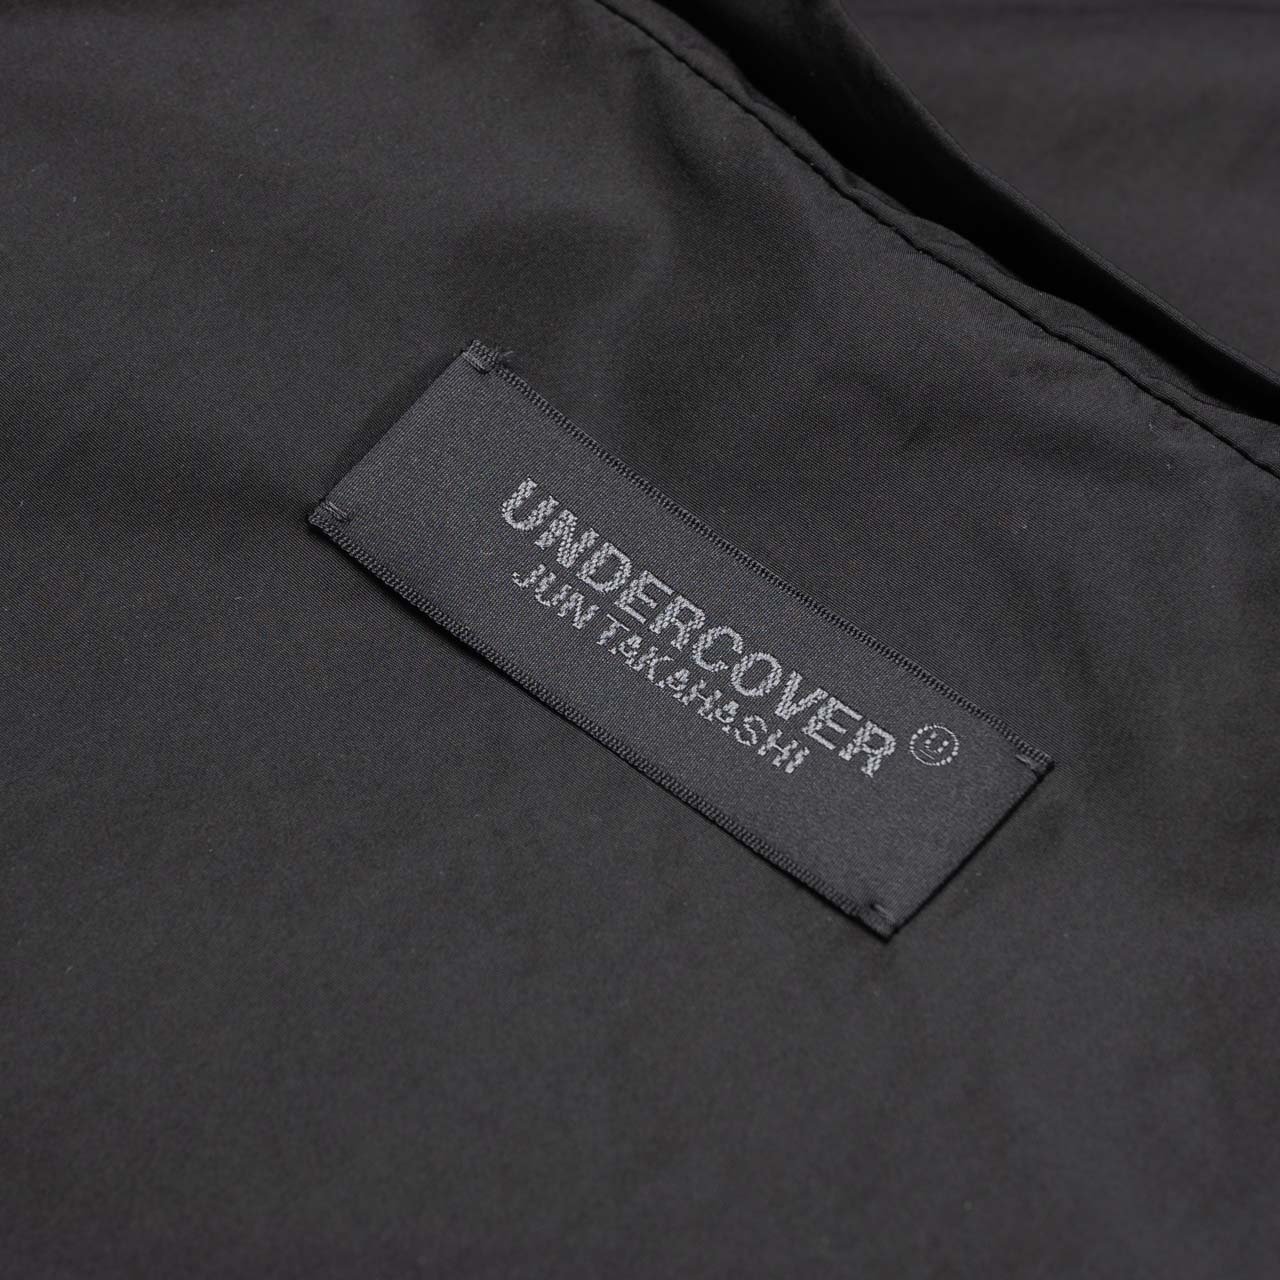 undercover undercover sten collar coat (black)